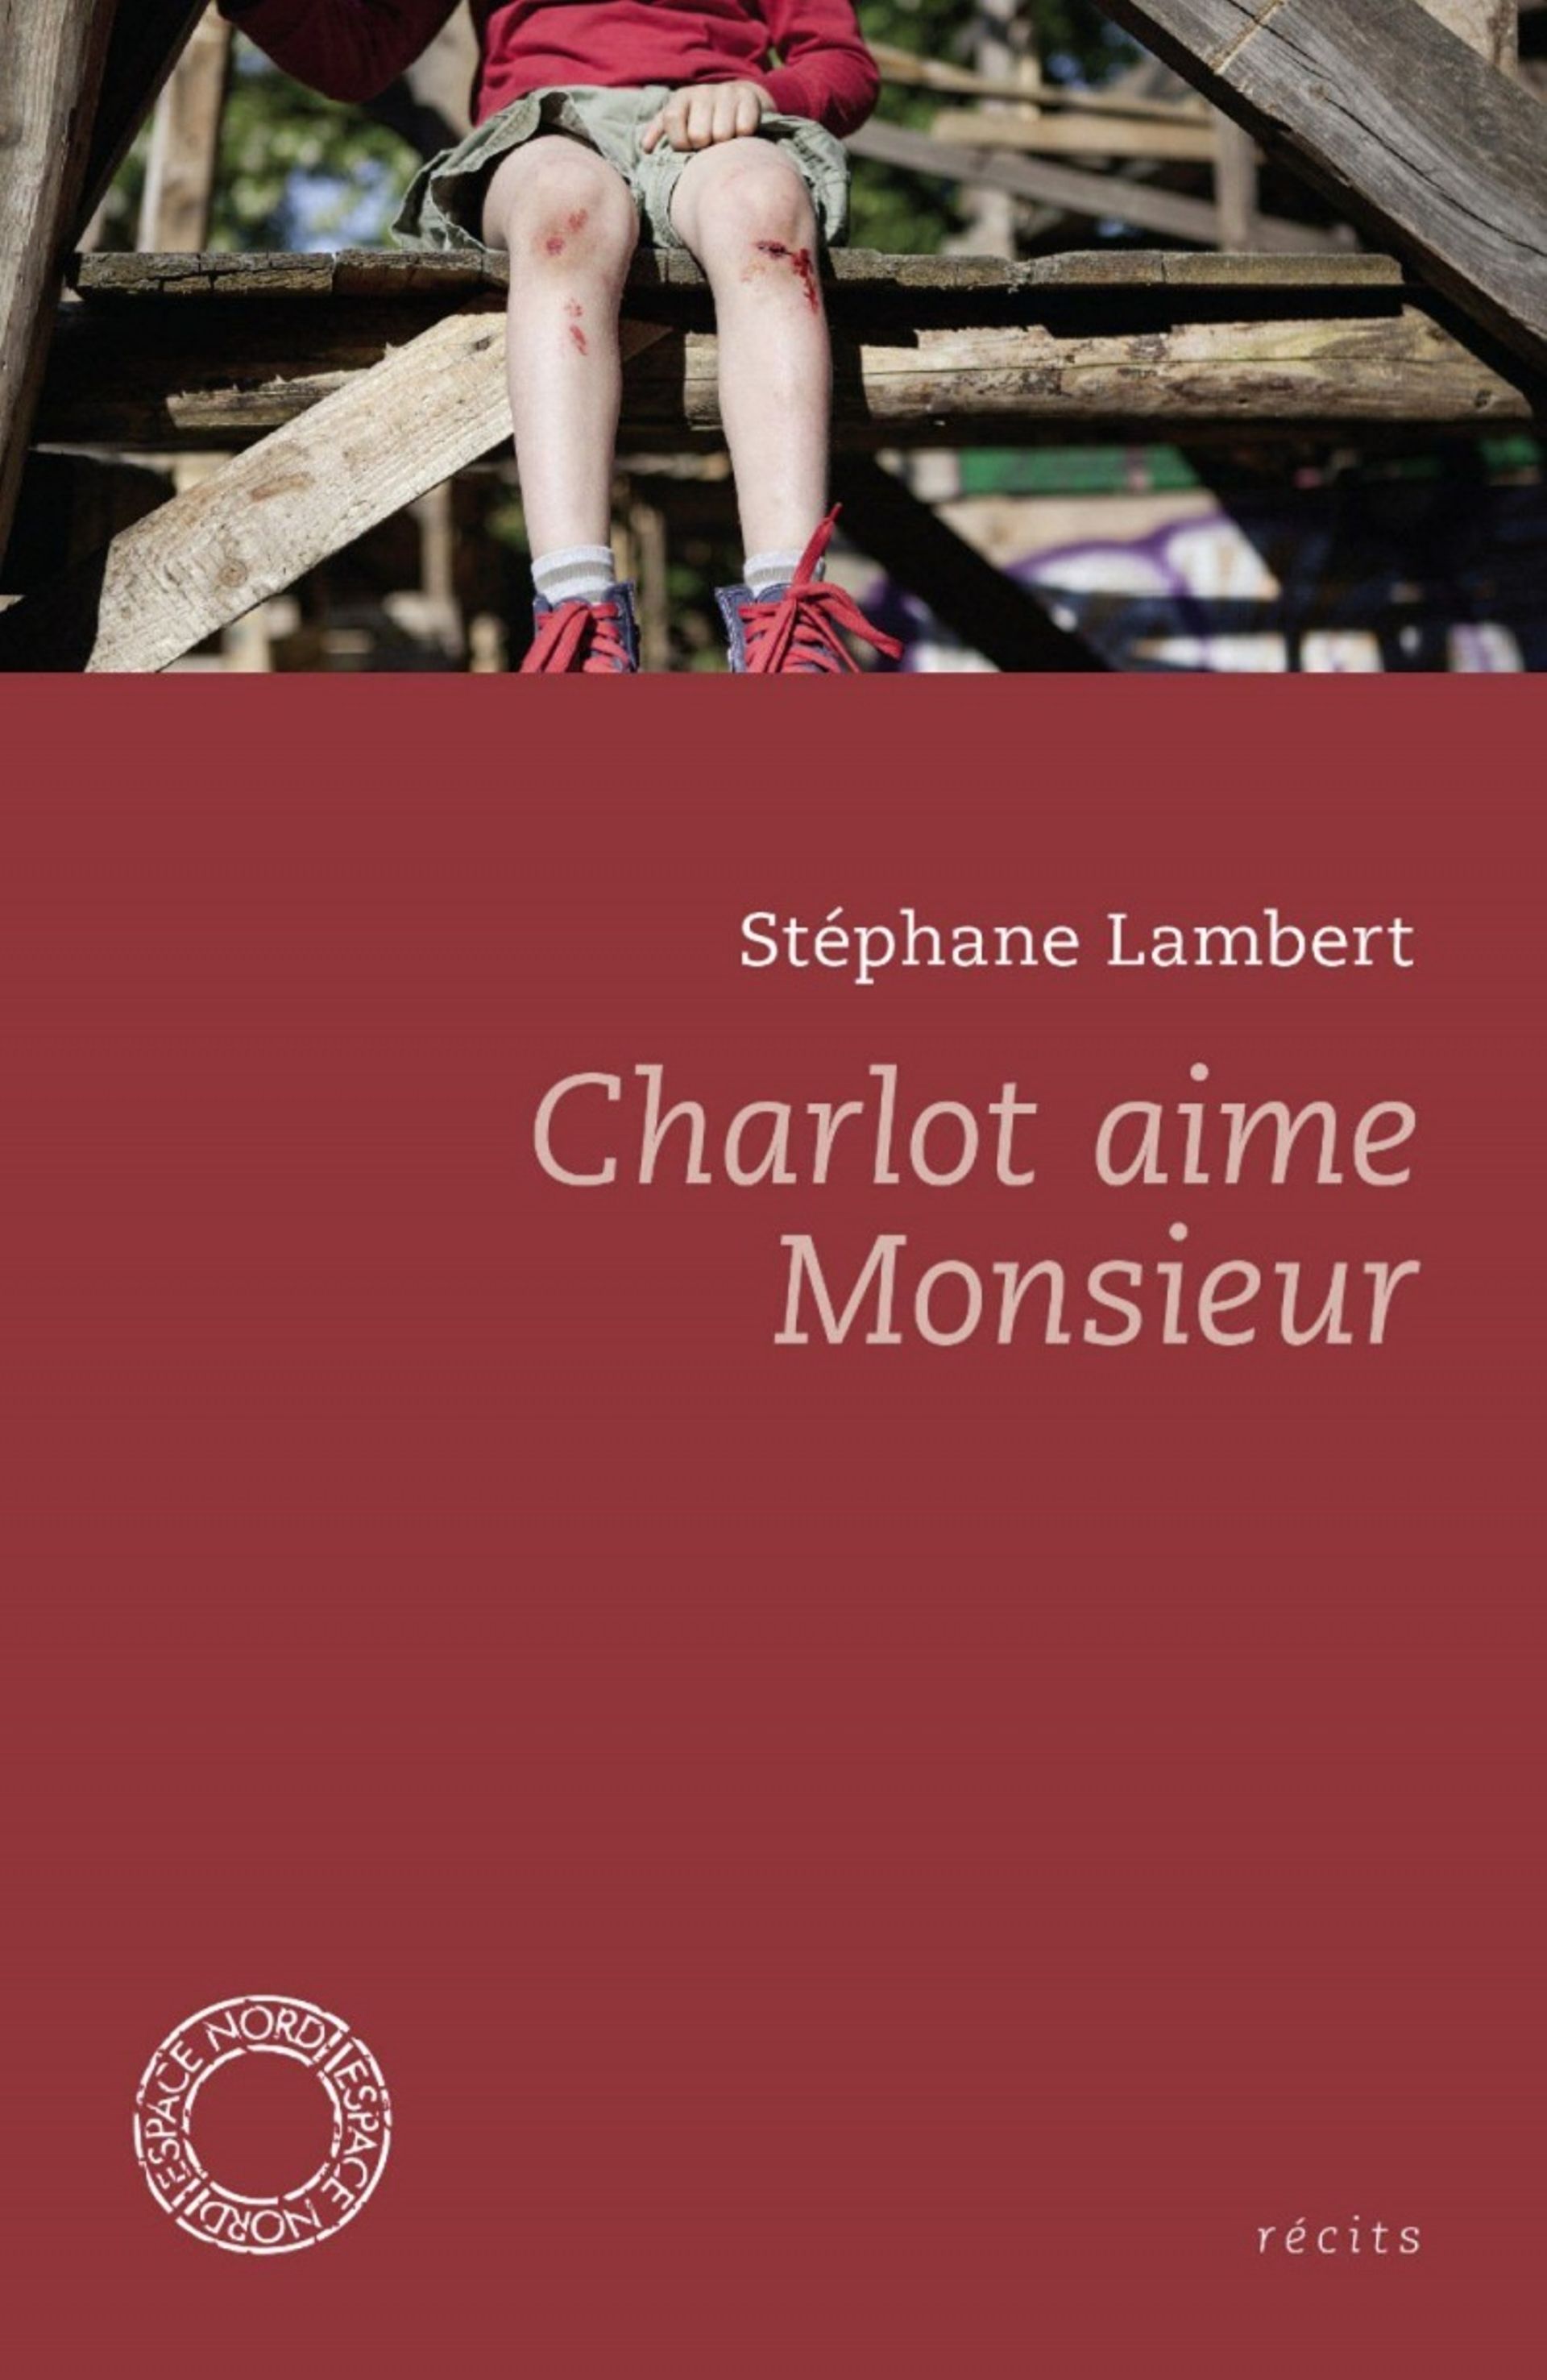 Couverture du livre "Charlot aime Monsieur" de Stéphane Lambert (Récits)